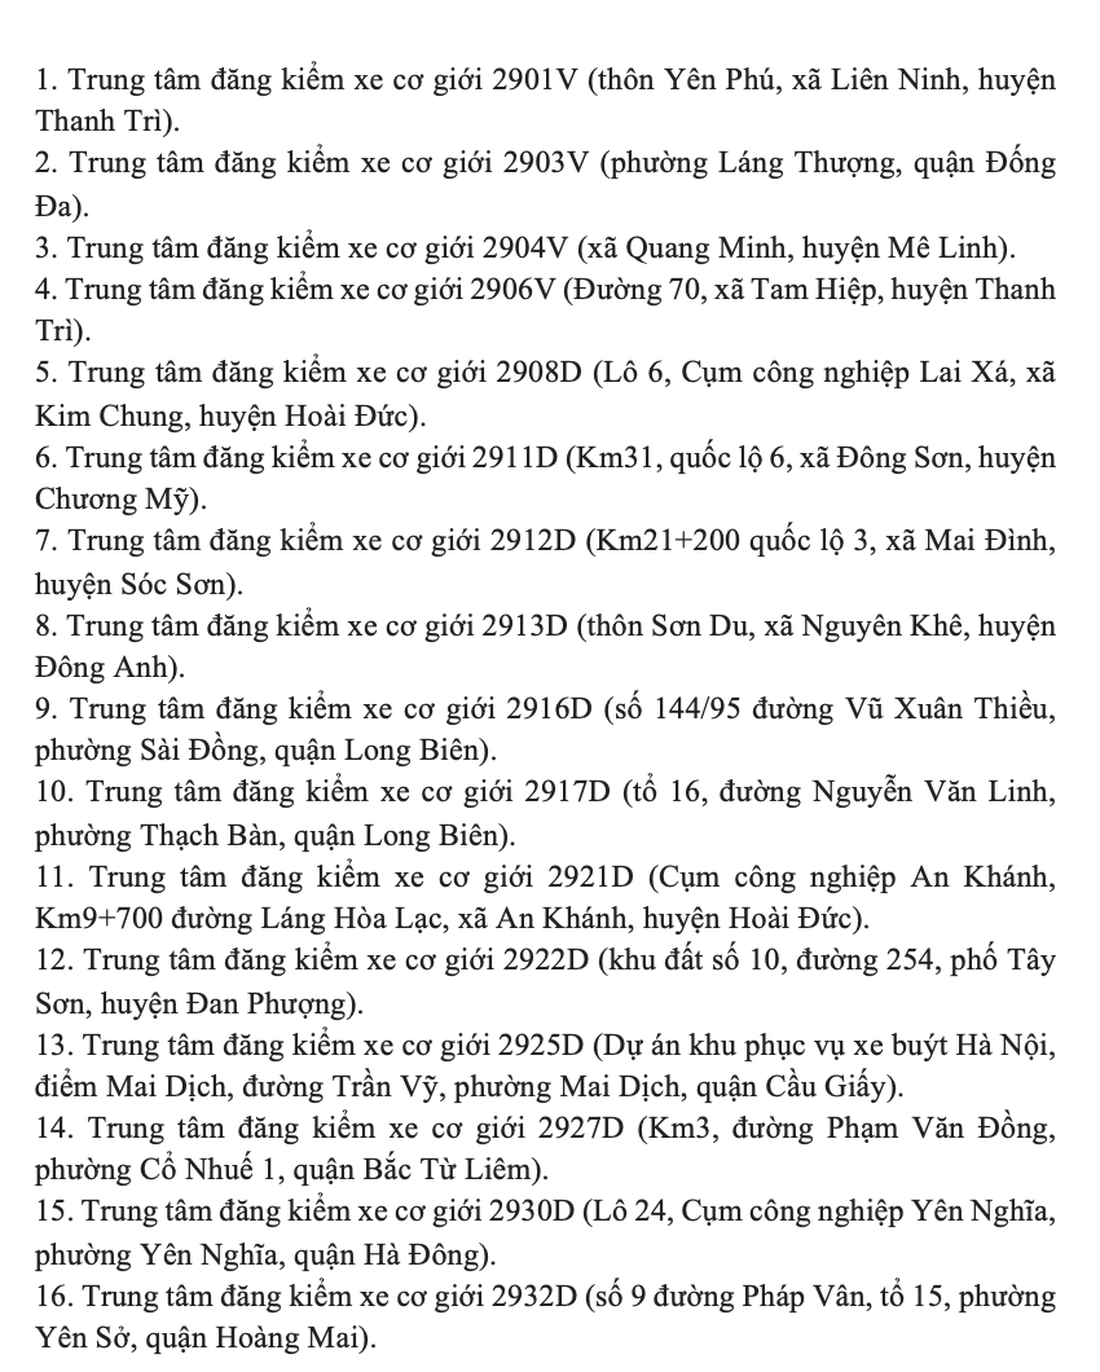 Tin tức sáng 27-2: Hà Nội chỉ còn 16/31 trung tâm đăng kiểm hoạt động - Ảnh 2.